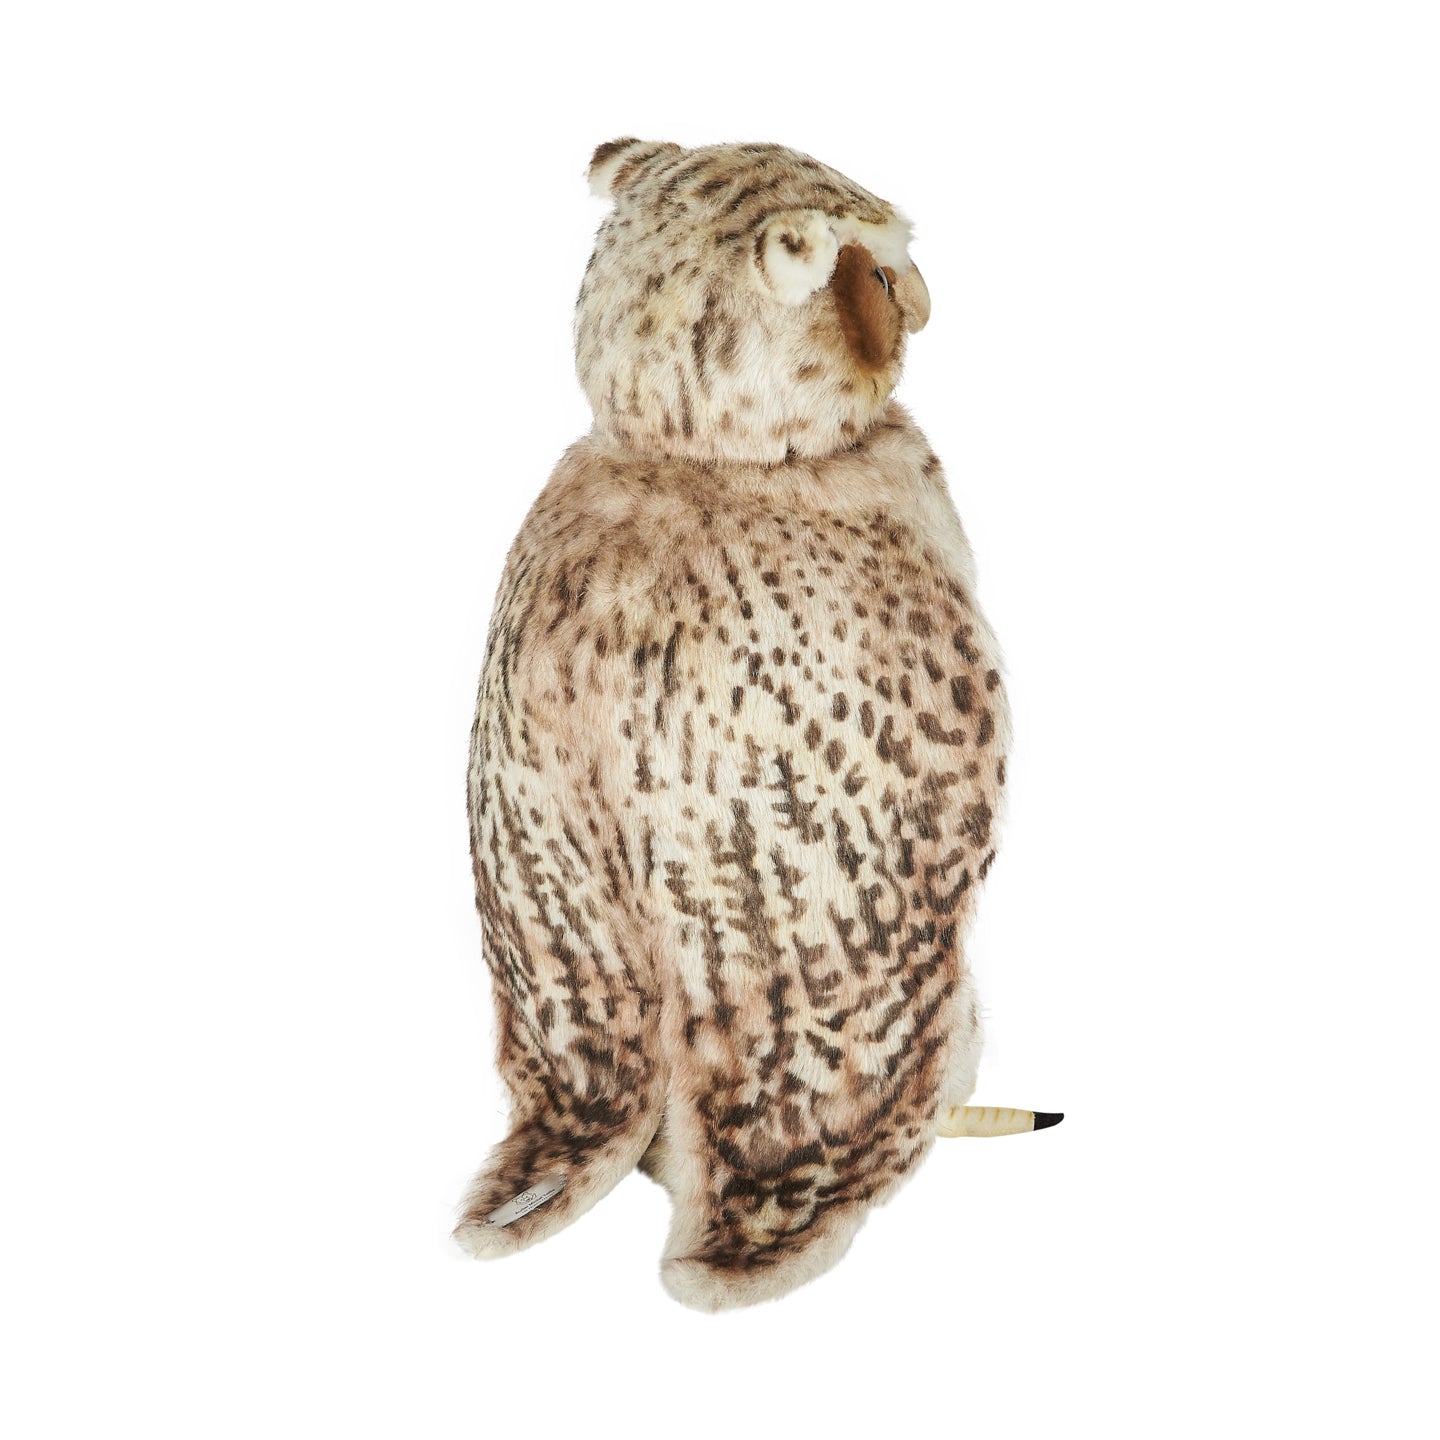 Animated Plush Owl